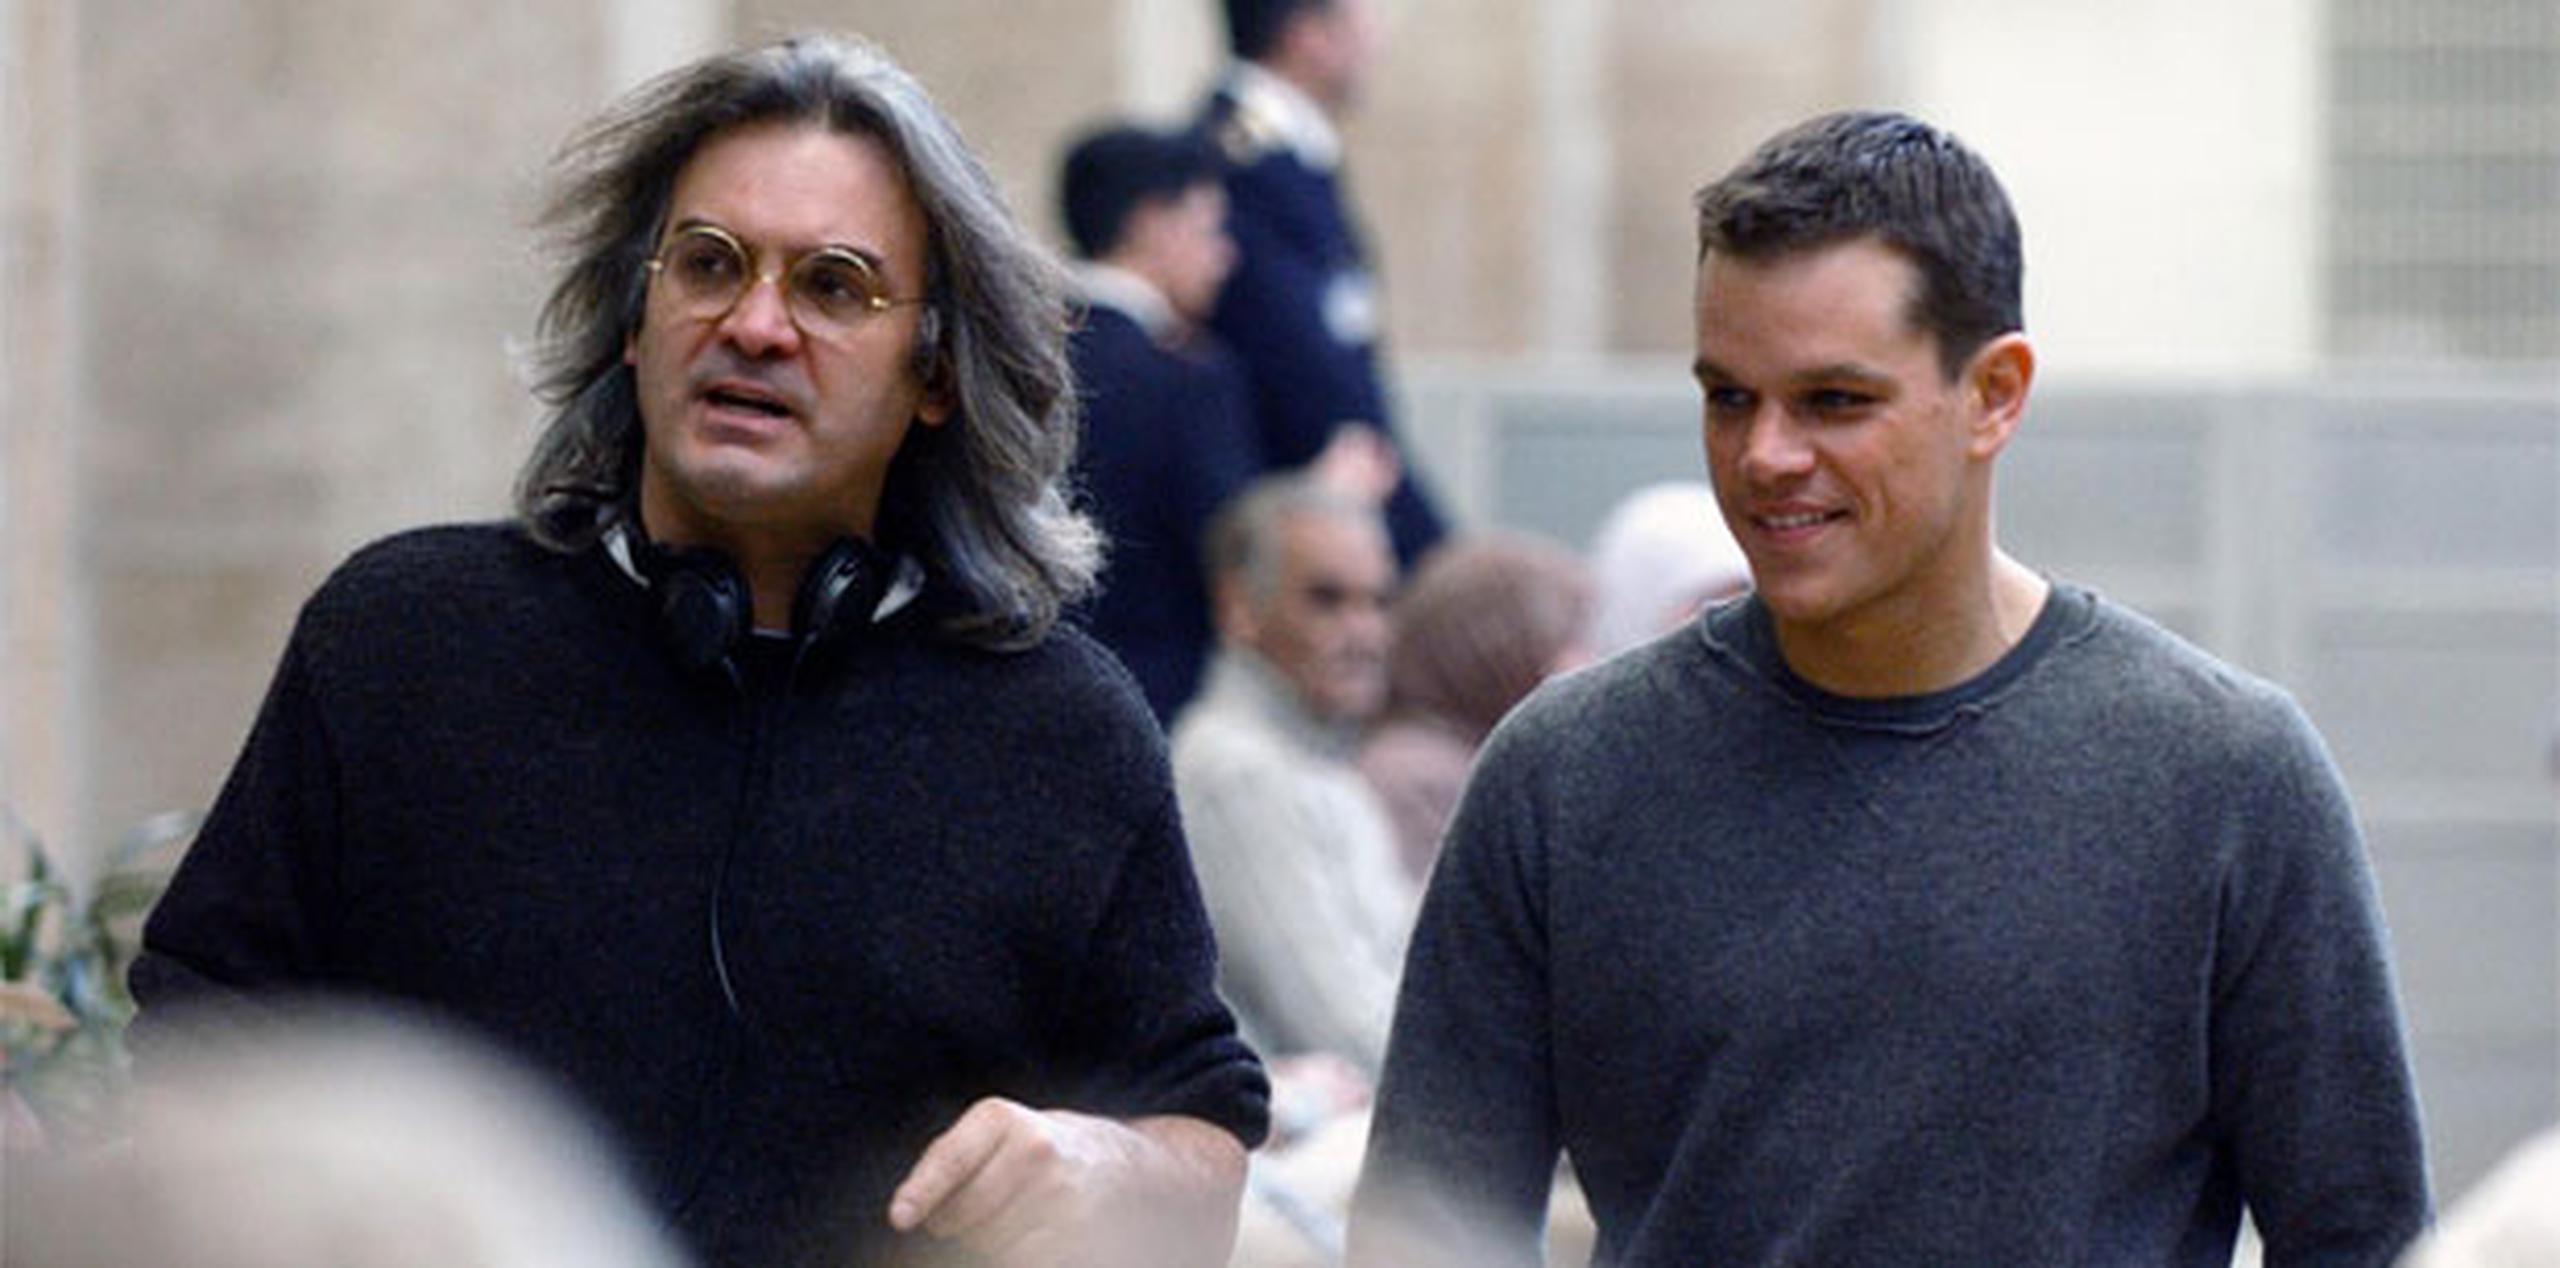 El estudio Universal Pictures ha comenzado a negociar con Paul Greengrass y Matt Damon para firmar la que sería su tercera colaboración en la franquicia.